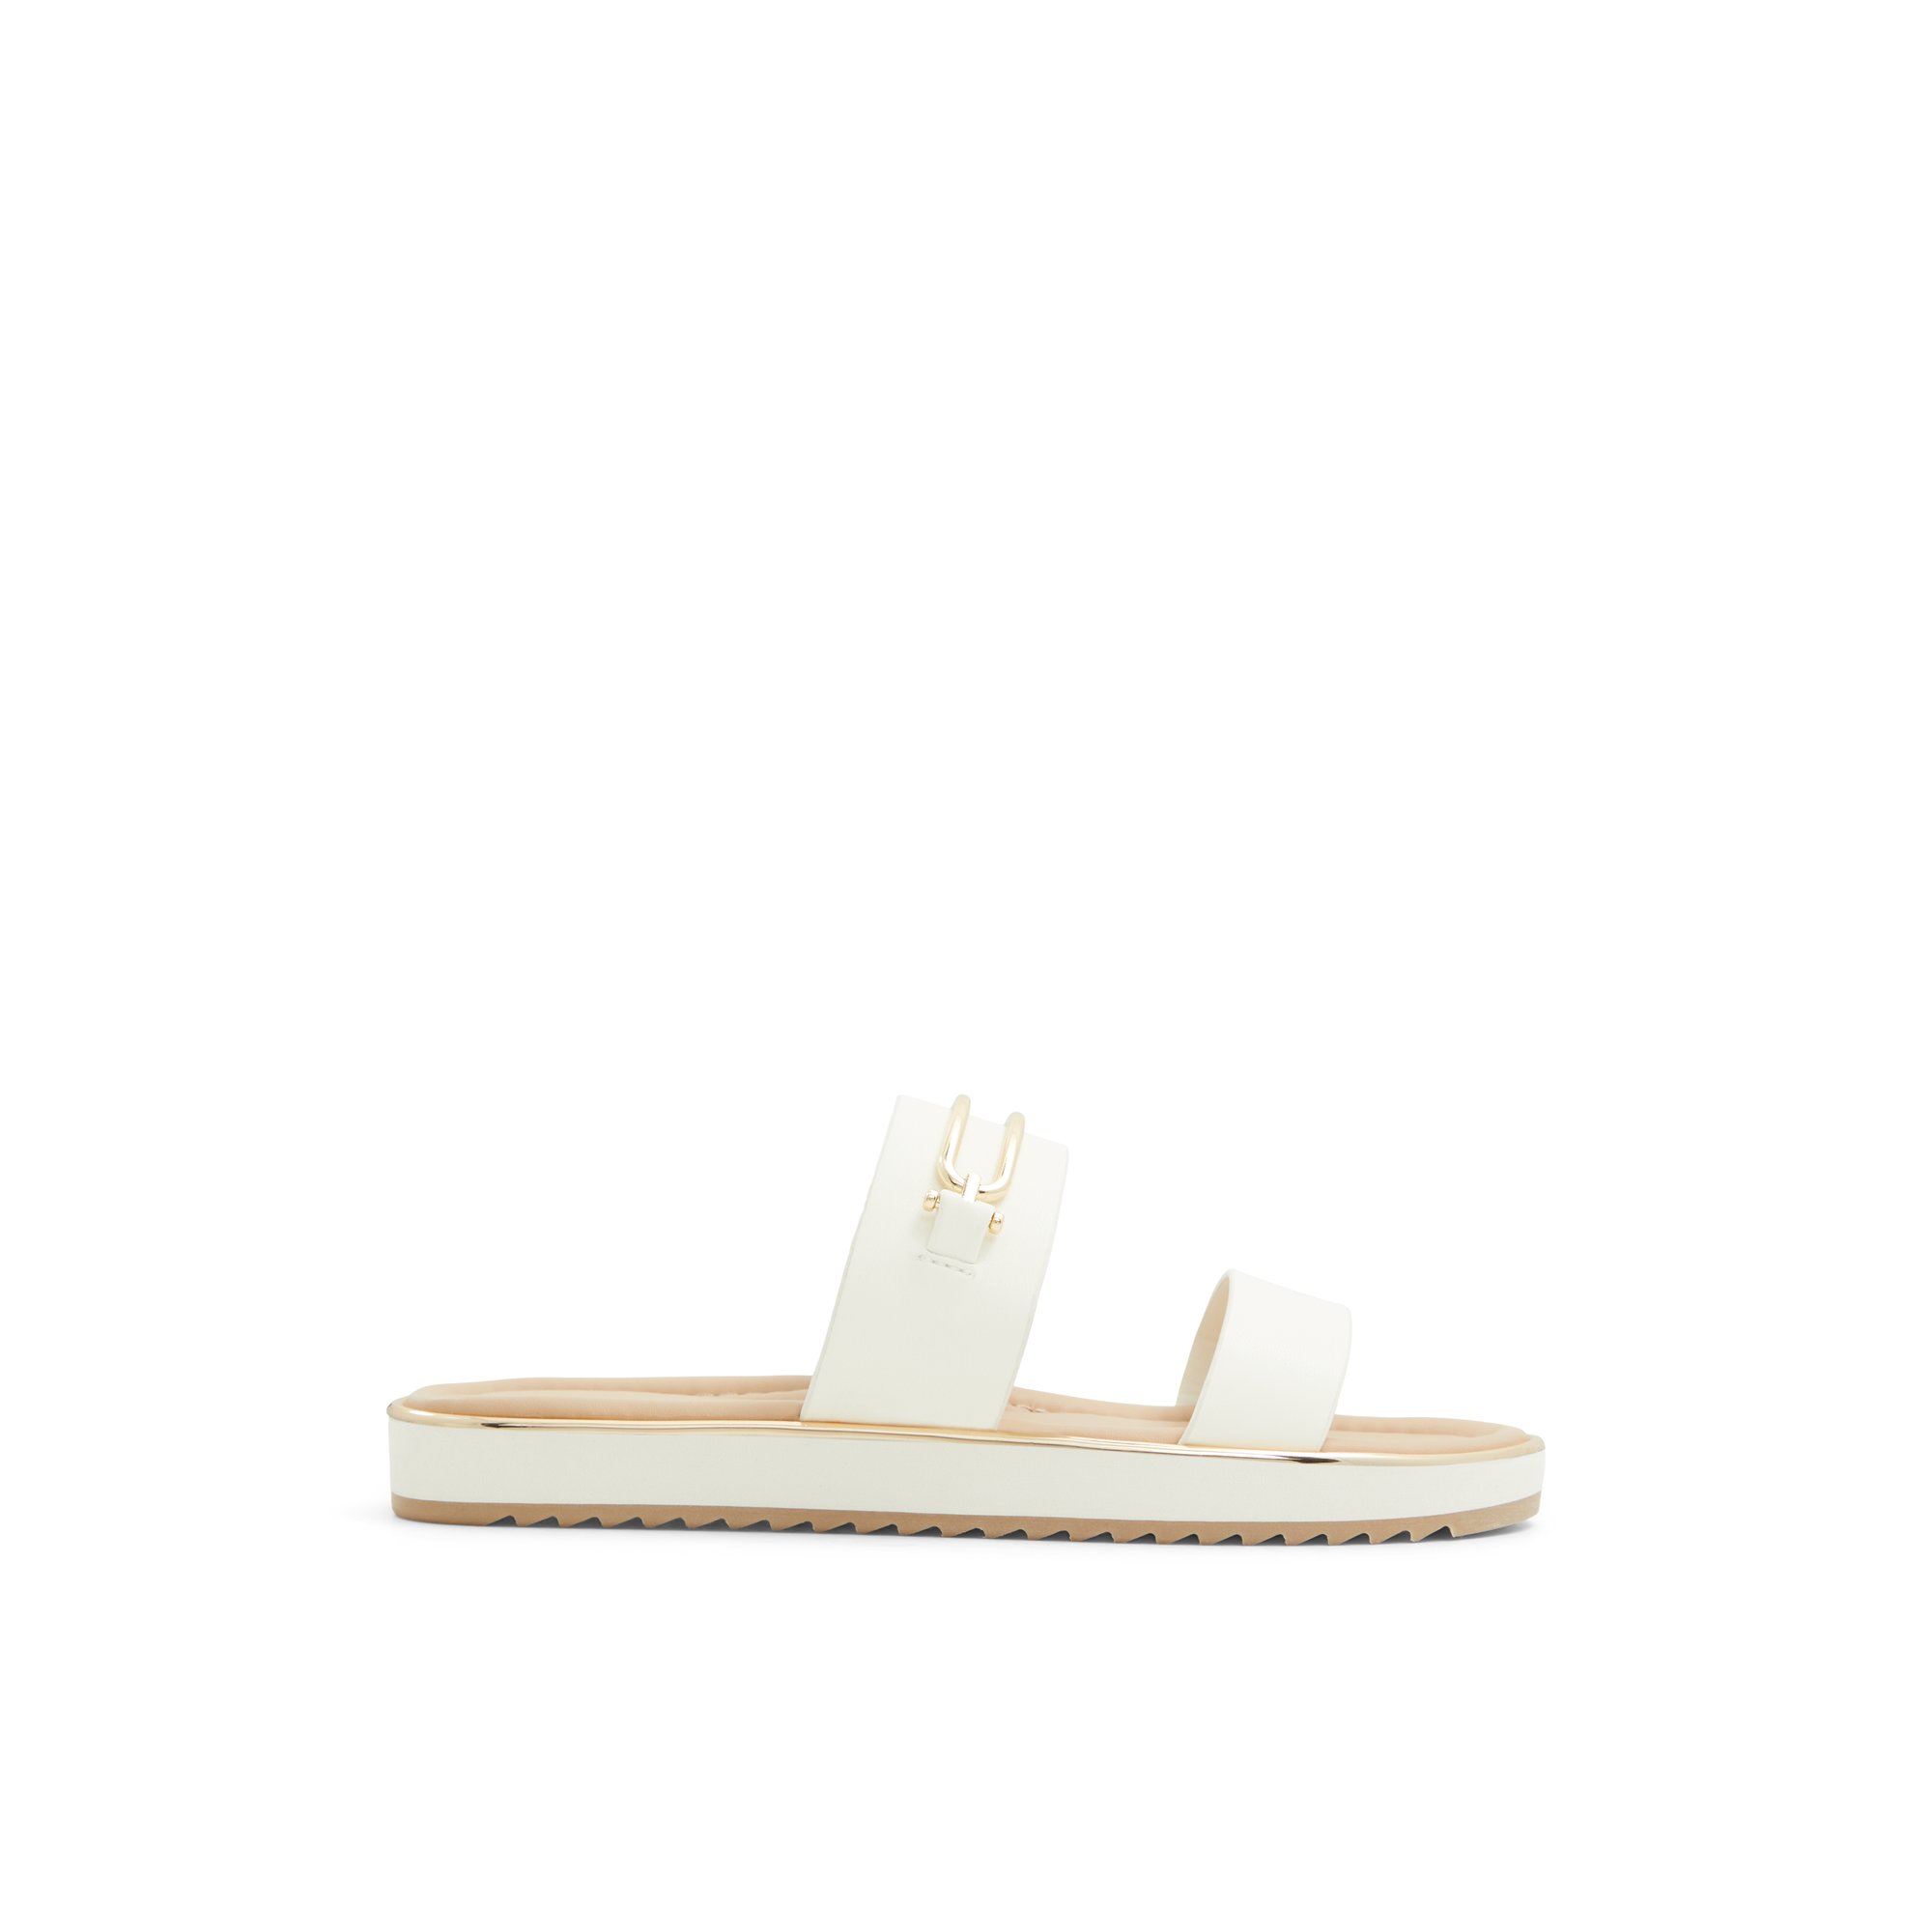 ALDO Lagoon - Women's Sandals Flats - White